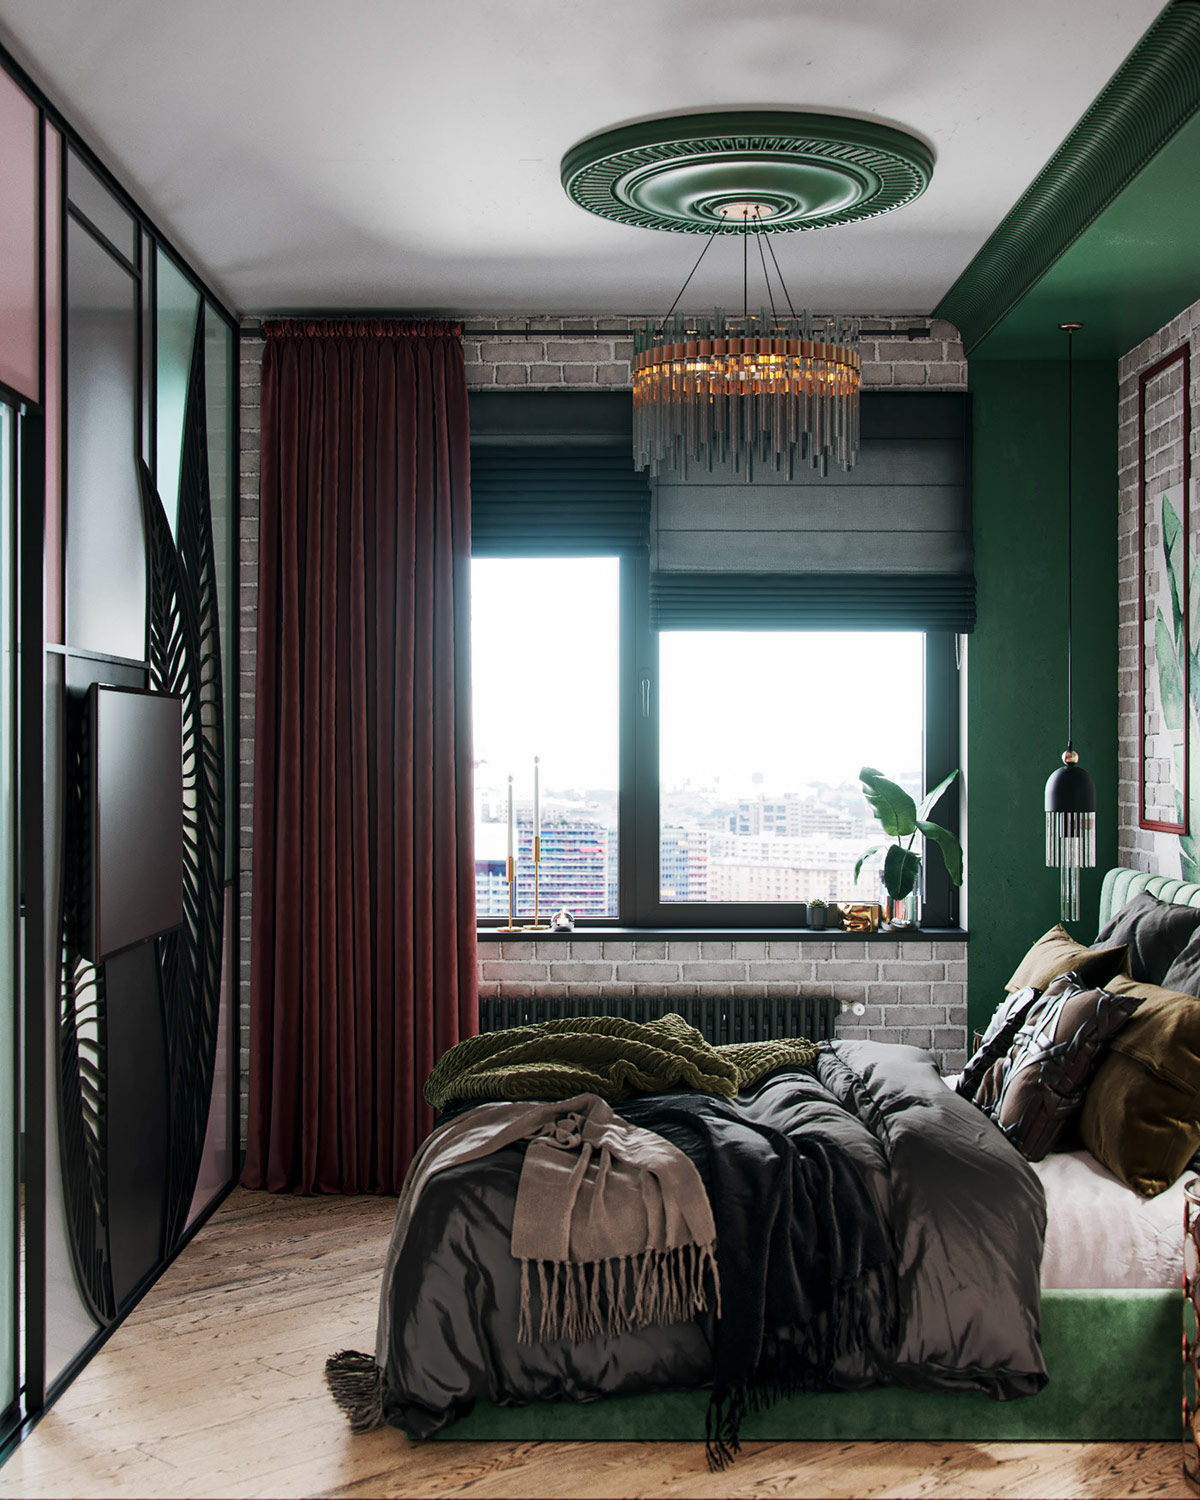 Hình ảnh một góc phòng với rèm cửa màu đỏ tía, giường màu xanh lá, tường gạch thô